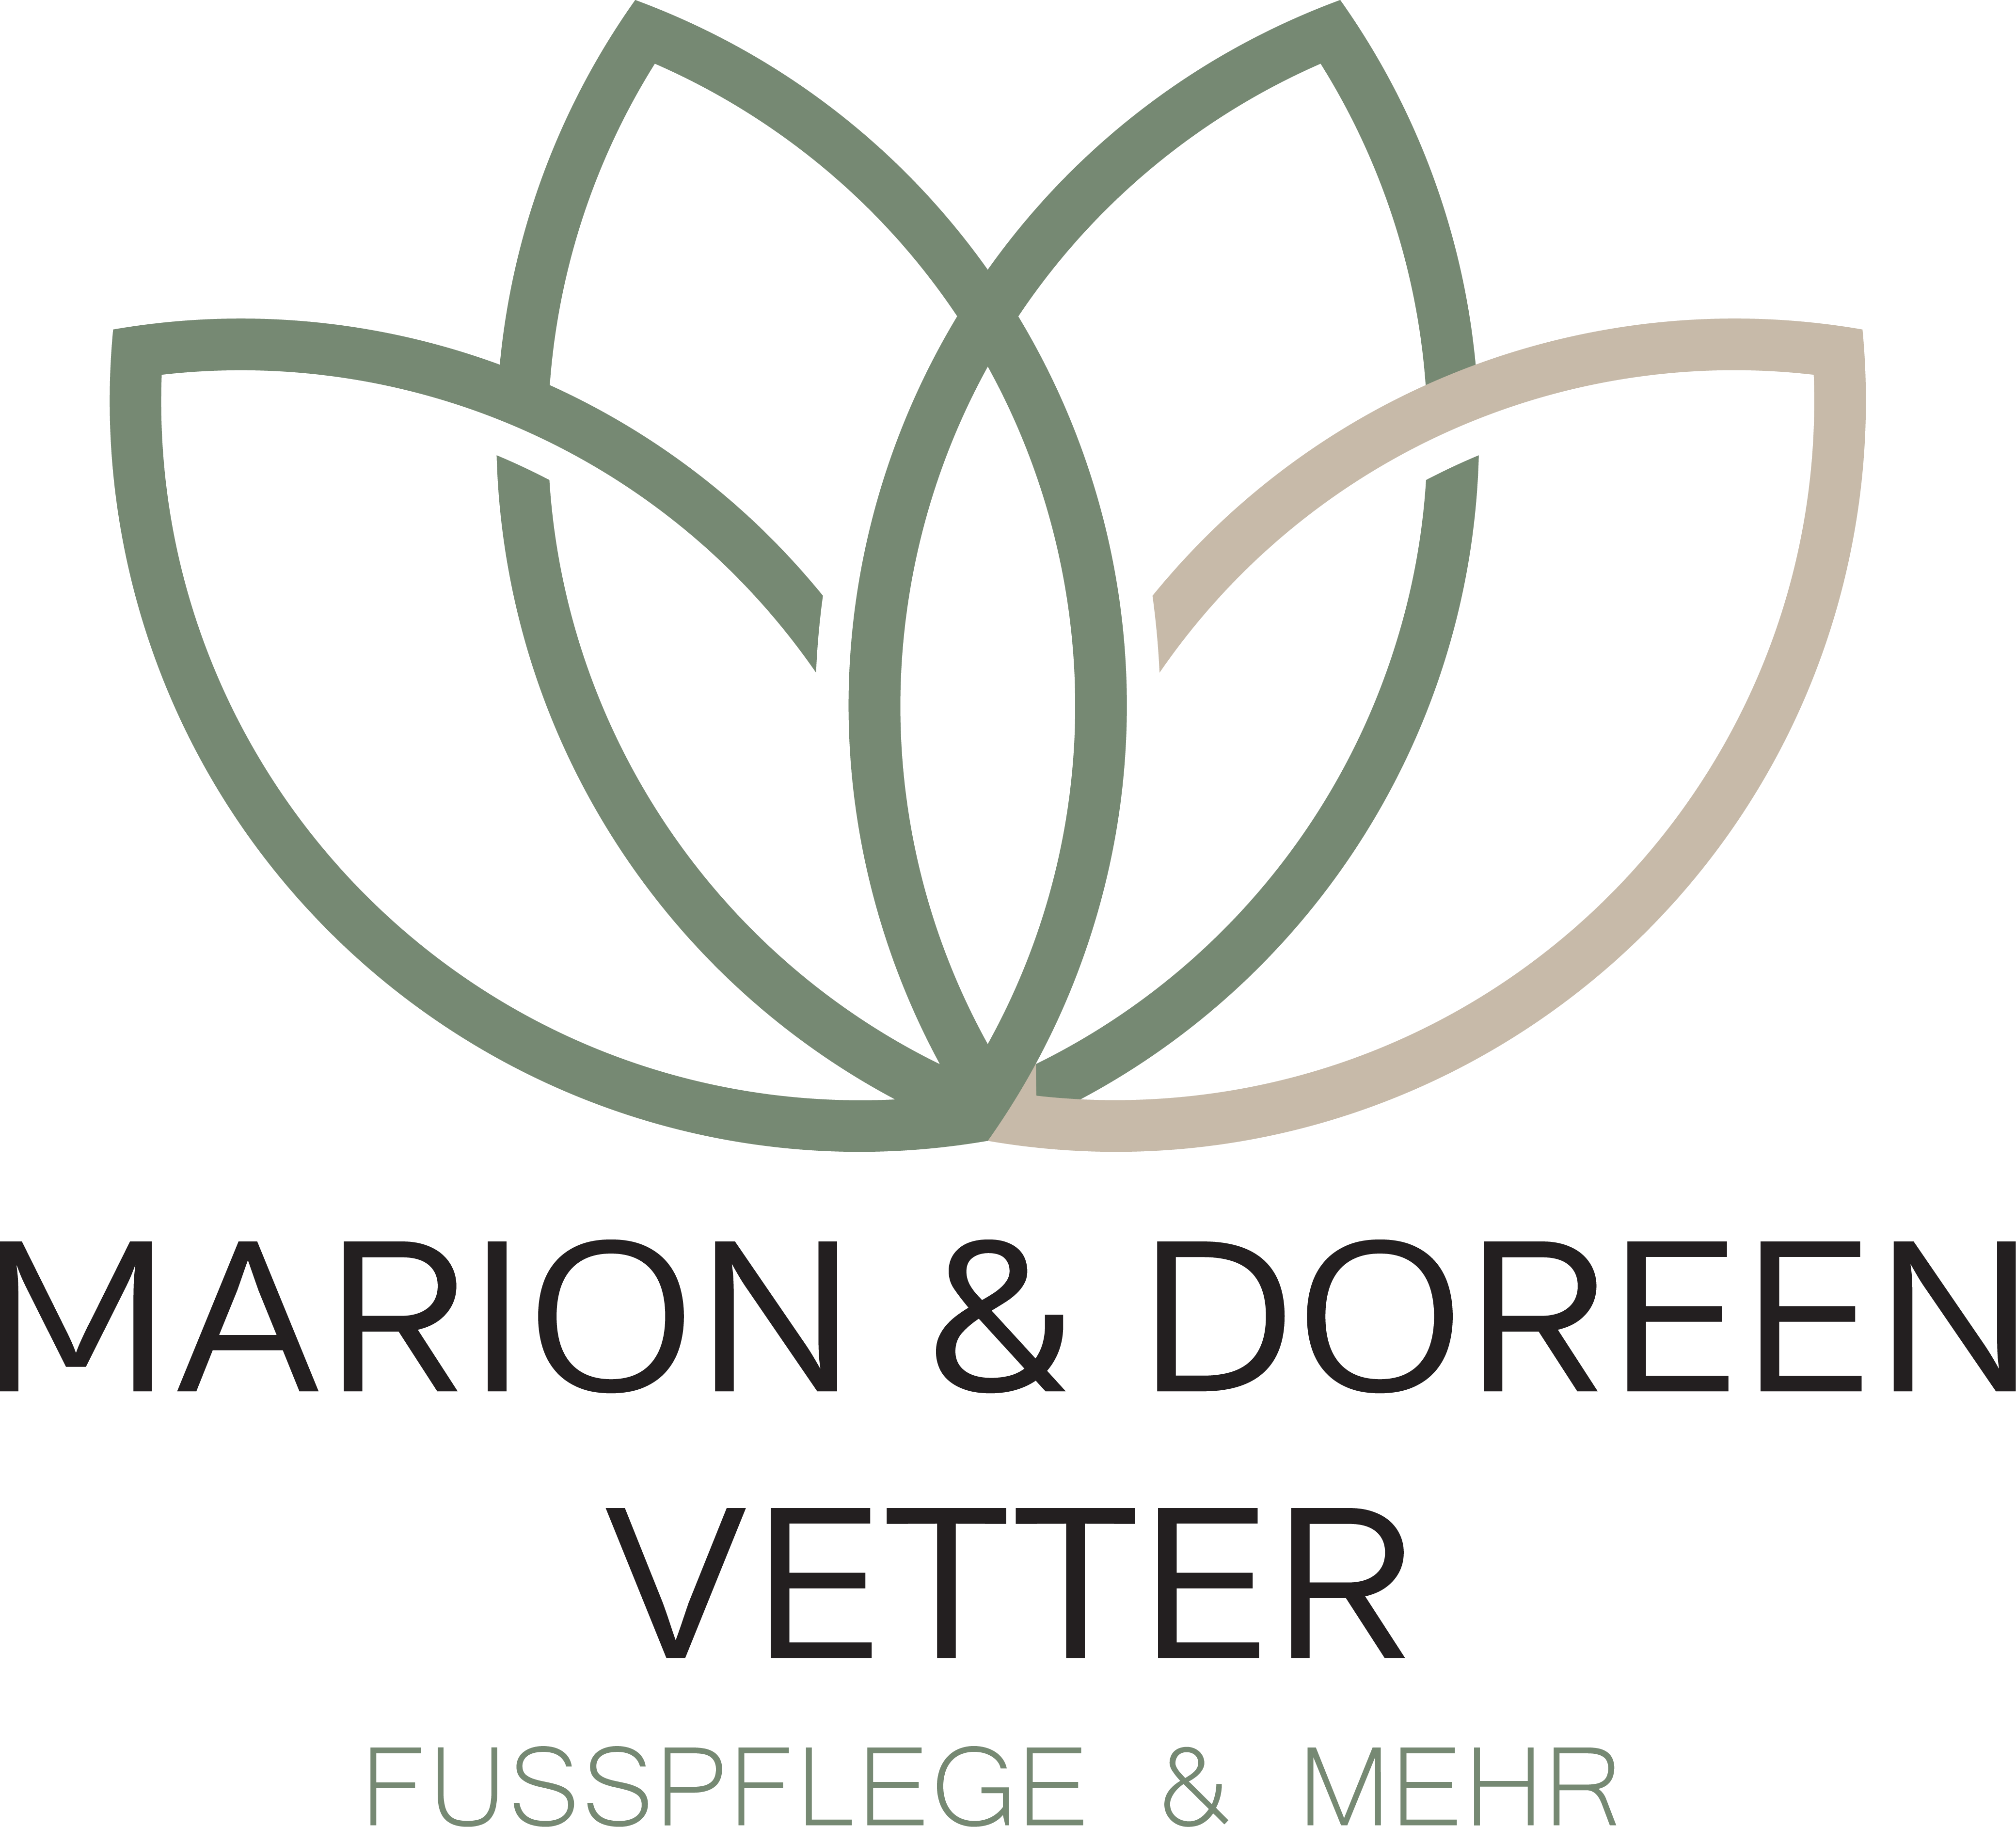 Marion & Doreen Vetter - Fusspflege & Mehr